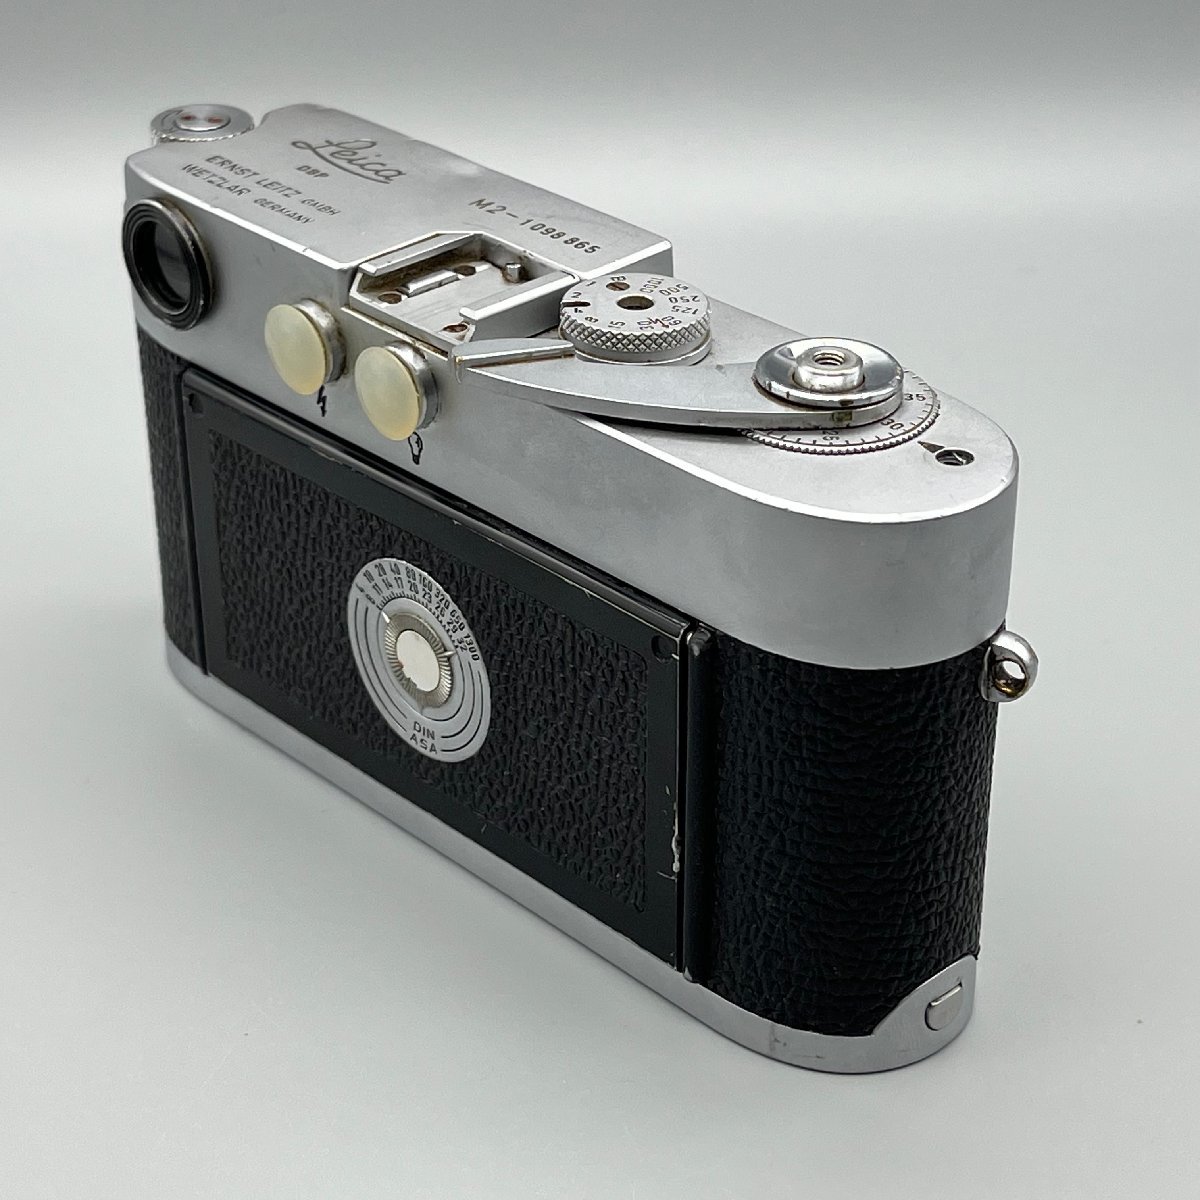 Leica M2 ELC ライカ M2 エルカン 後期型 セルフタイマー付 Leica ライカ Mマウント 109万番台 1964年 カナダ製_画像6